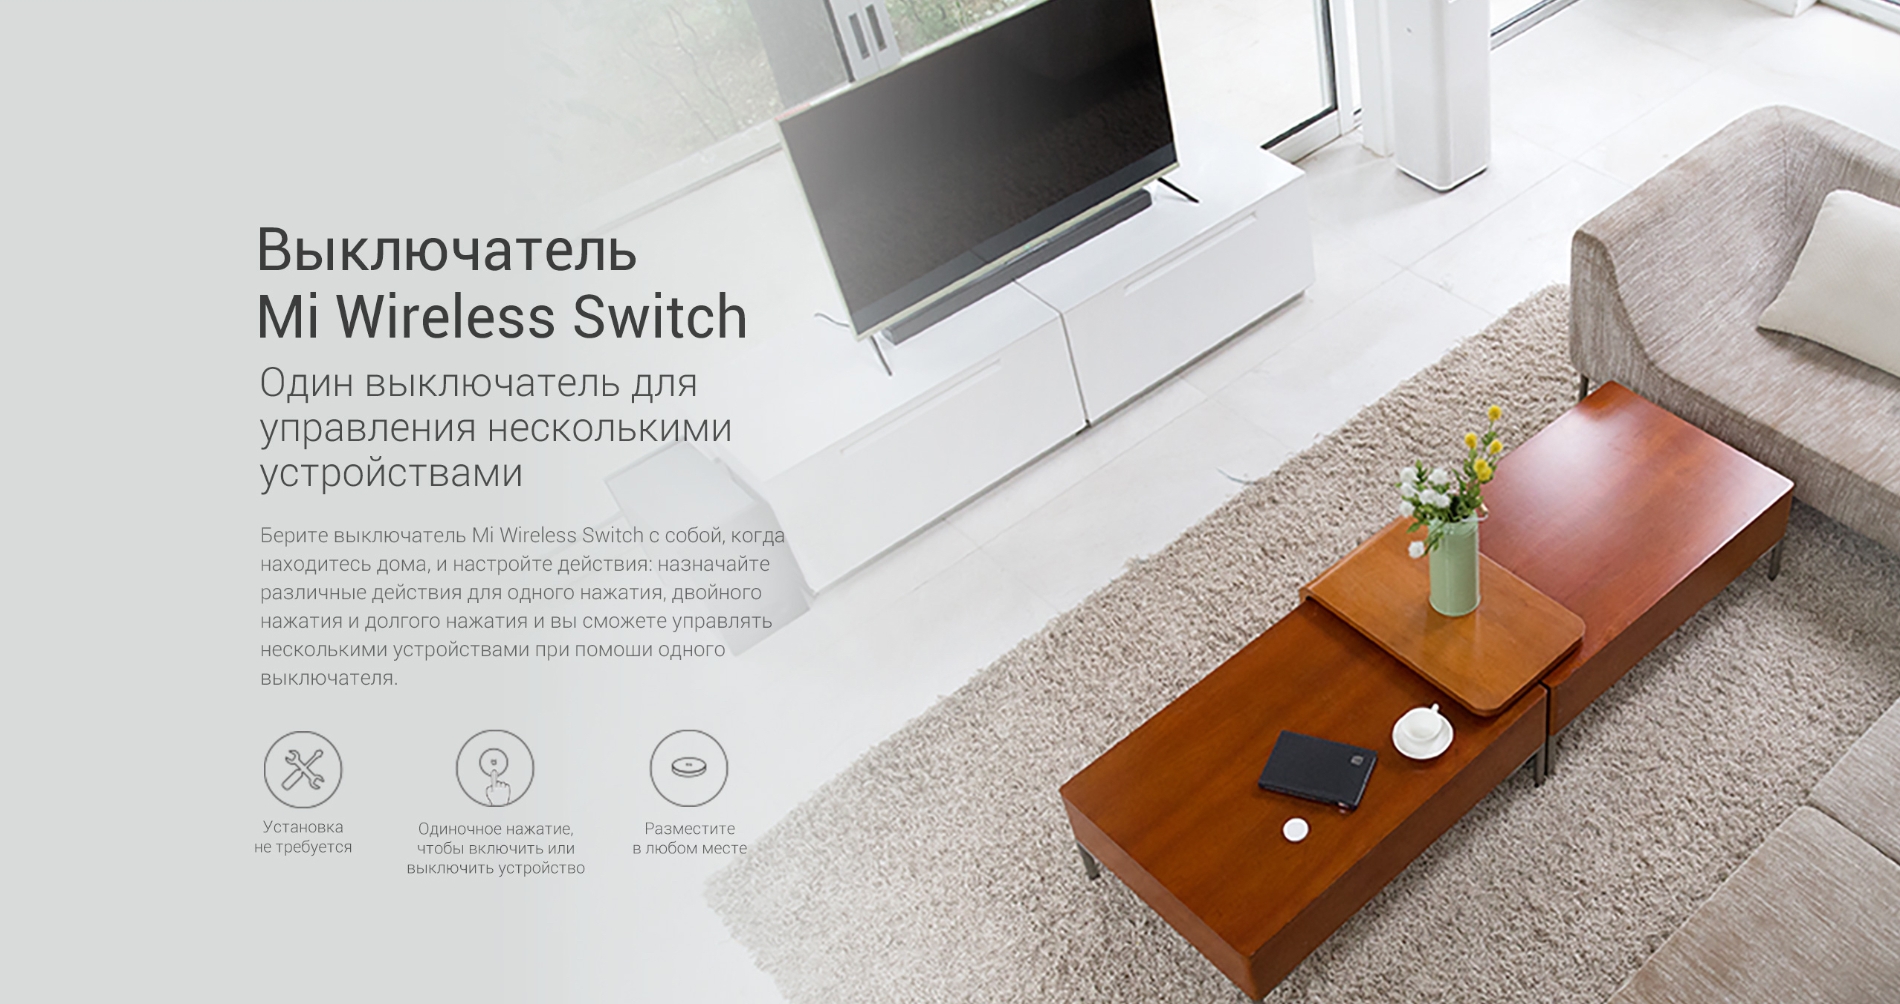 Набор датчиков для умного дома Xiaomi Mi Smart Sensor Set